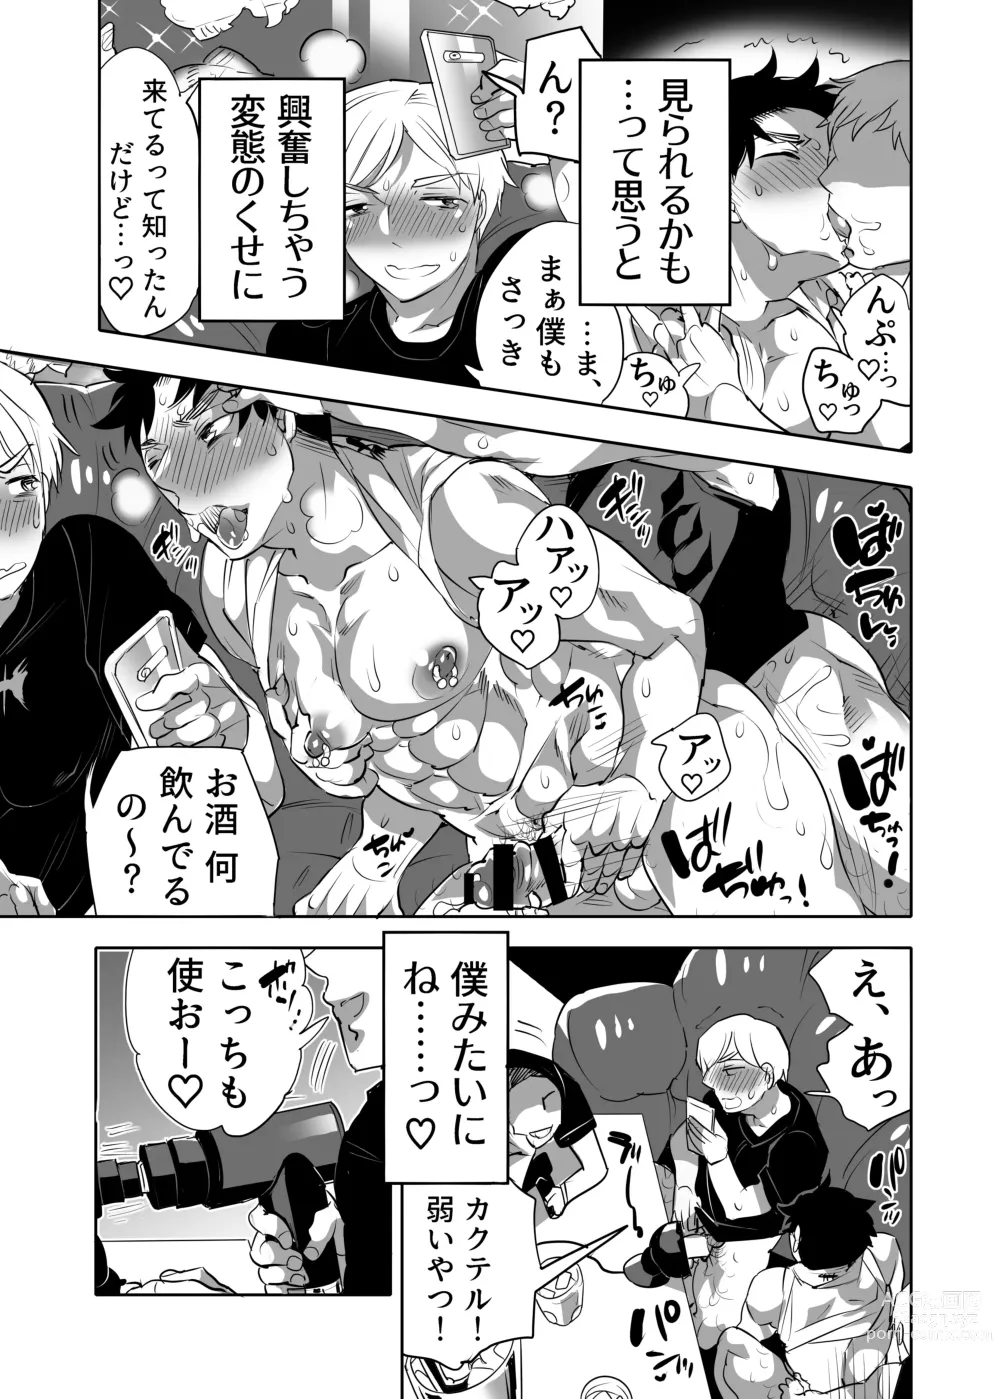 Page 51 of manga Abuso OK Prisionero Niño